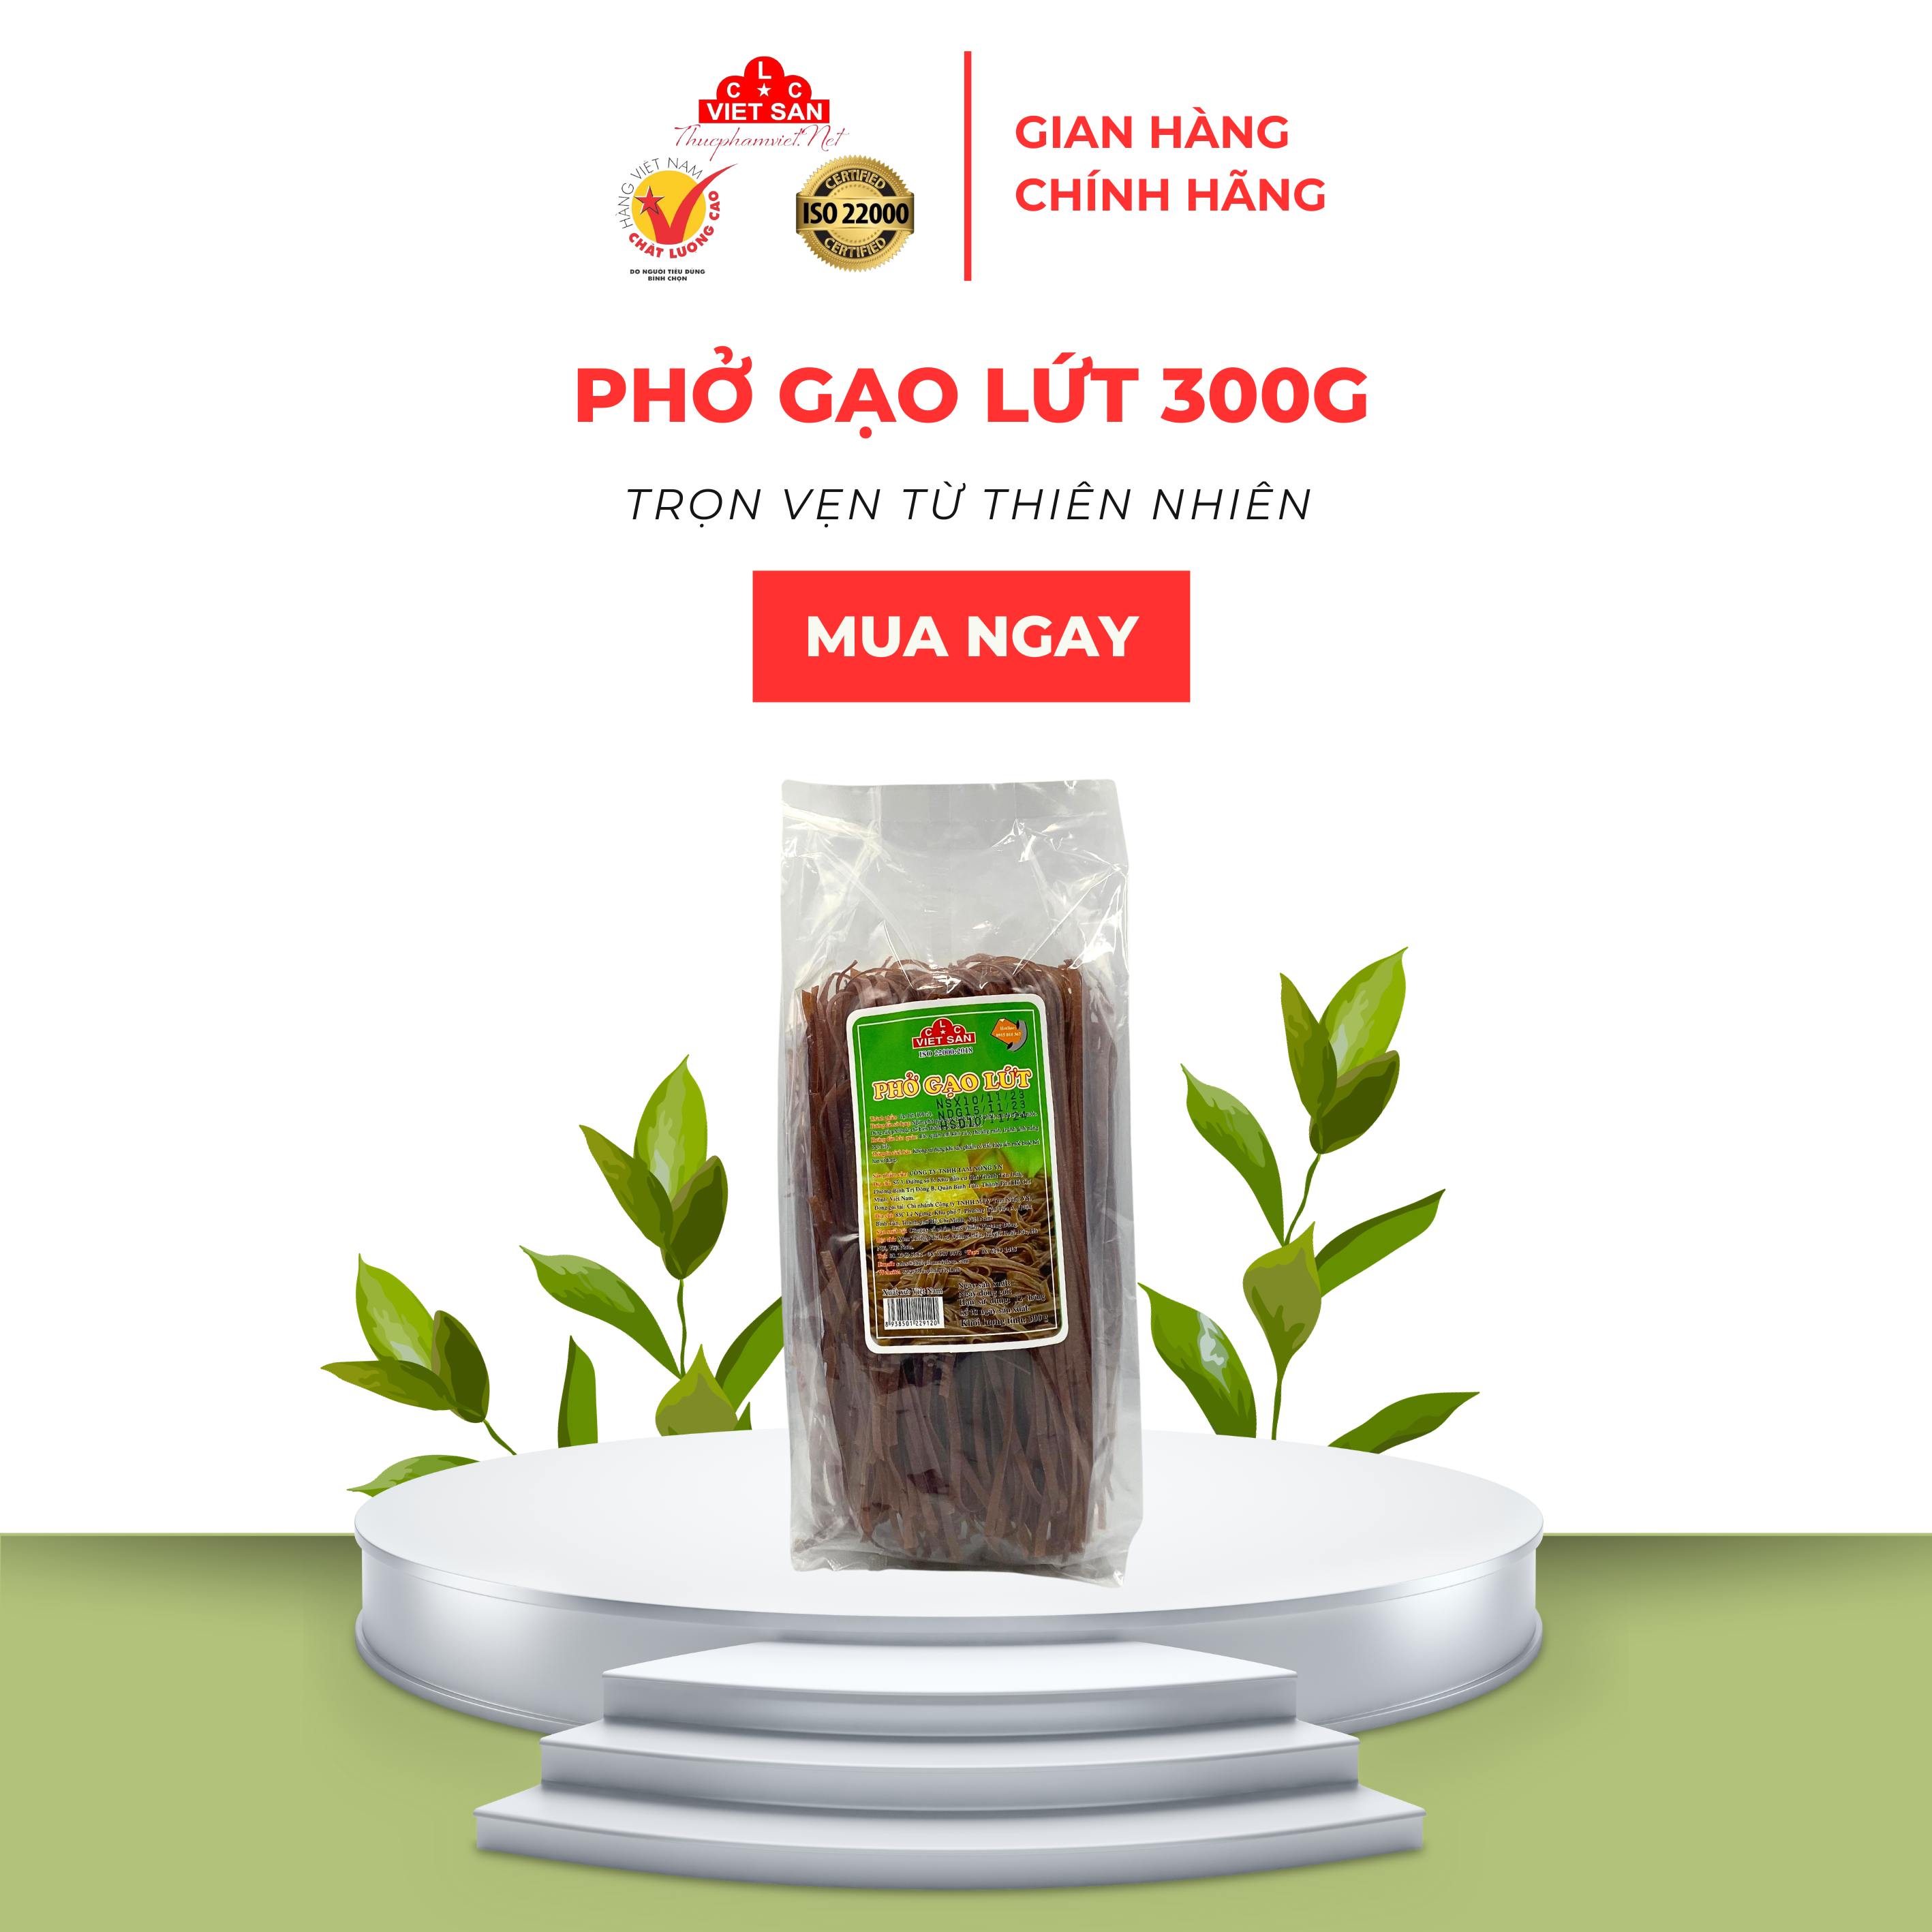 Phở Gạo Lứt Việt San 300G